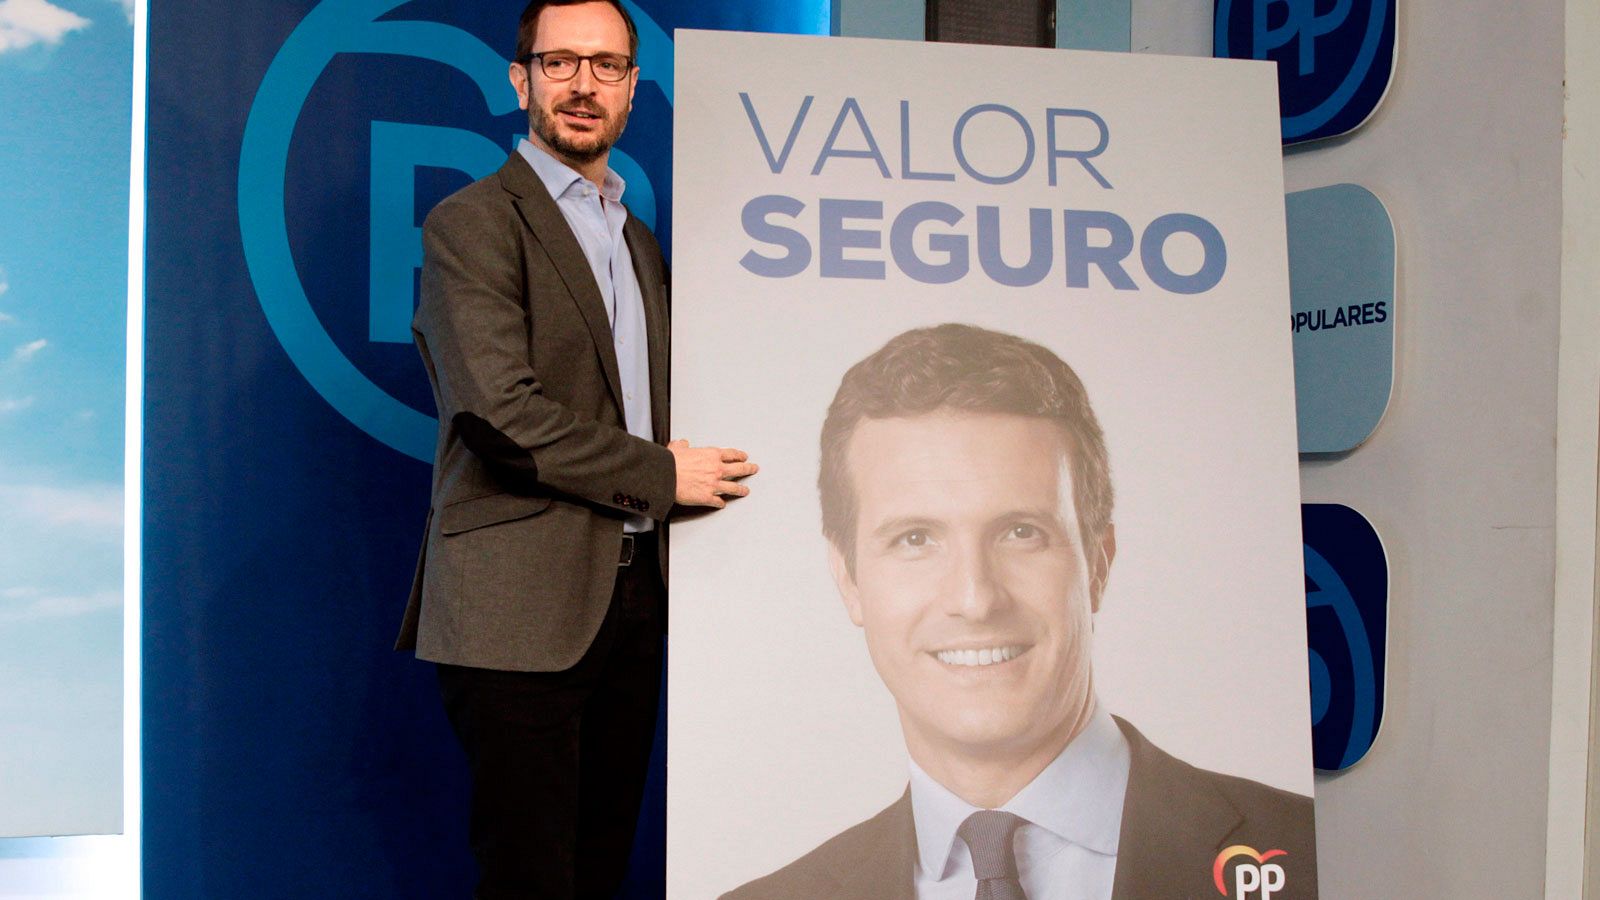 El vicesecretario de organización del Partido Popular Javier Maroto, durante la presentación del eslogan de campaña para las próximas elecciones generales del 28 de abril